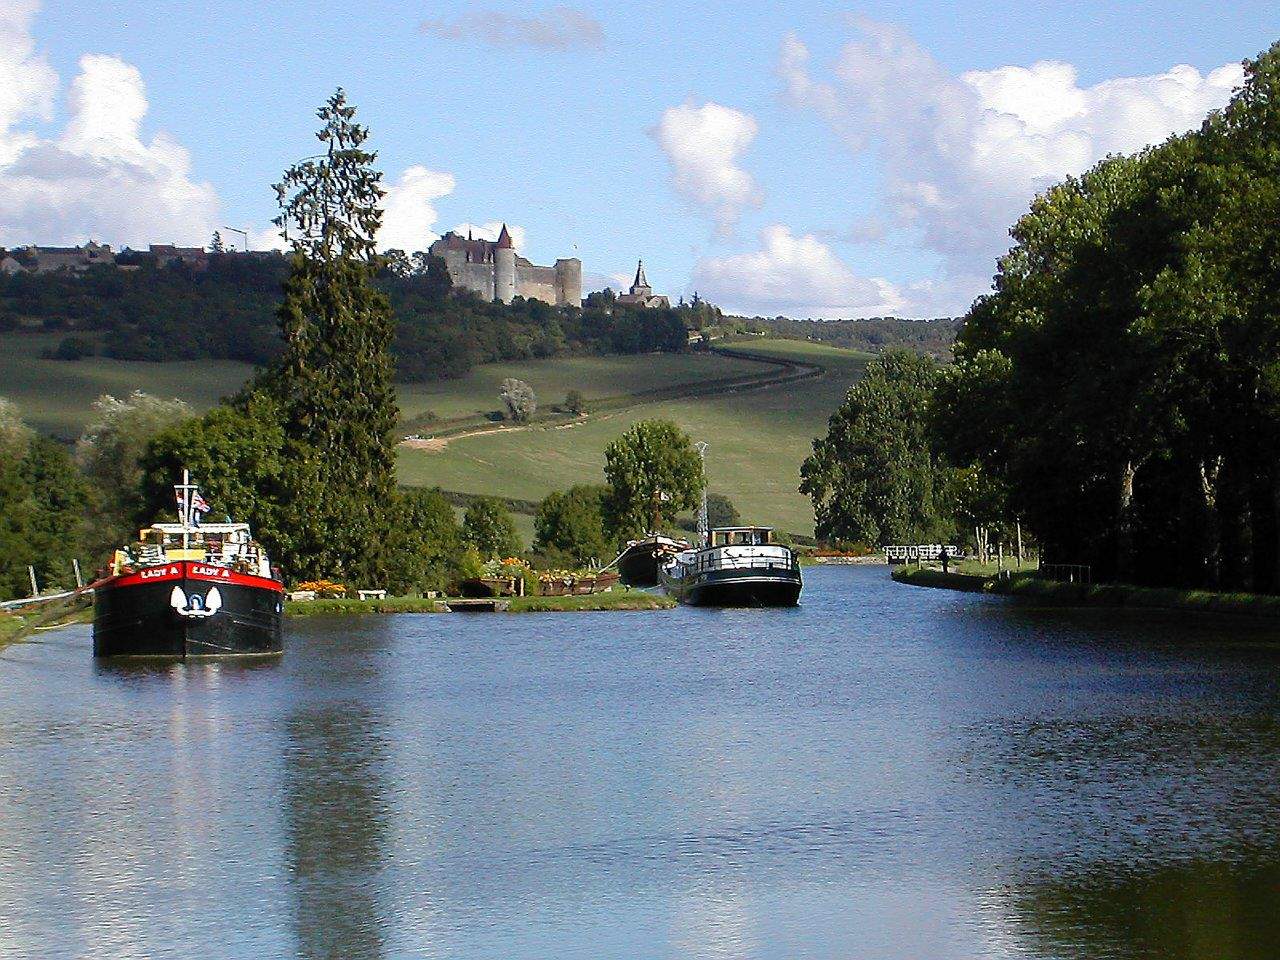 Zicht op het kasteel van vandenesse in auxois vanuit het kanaal